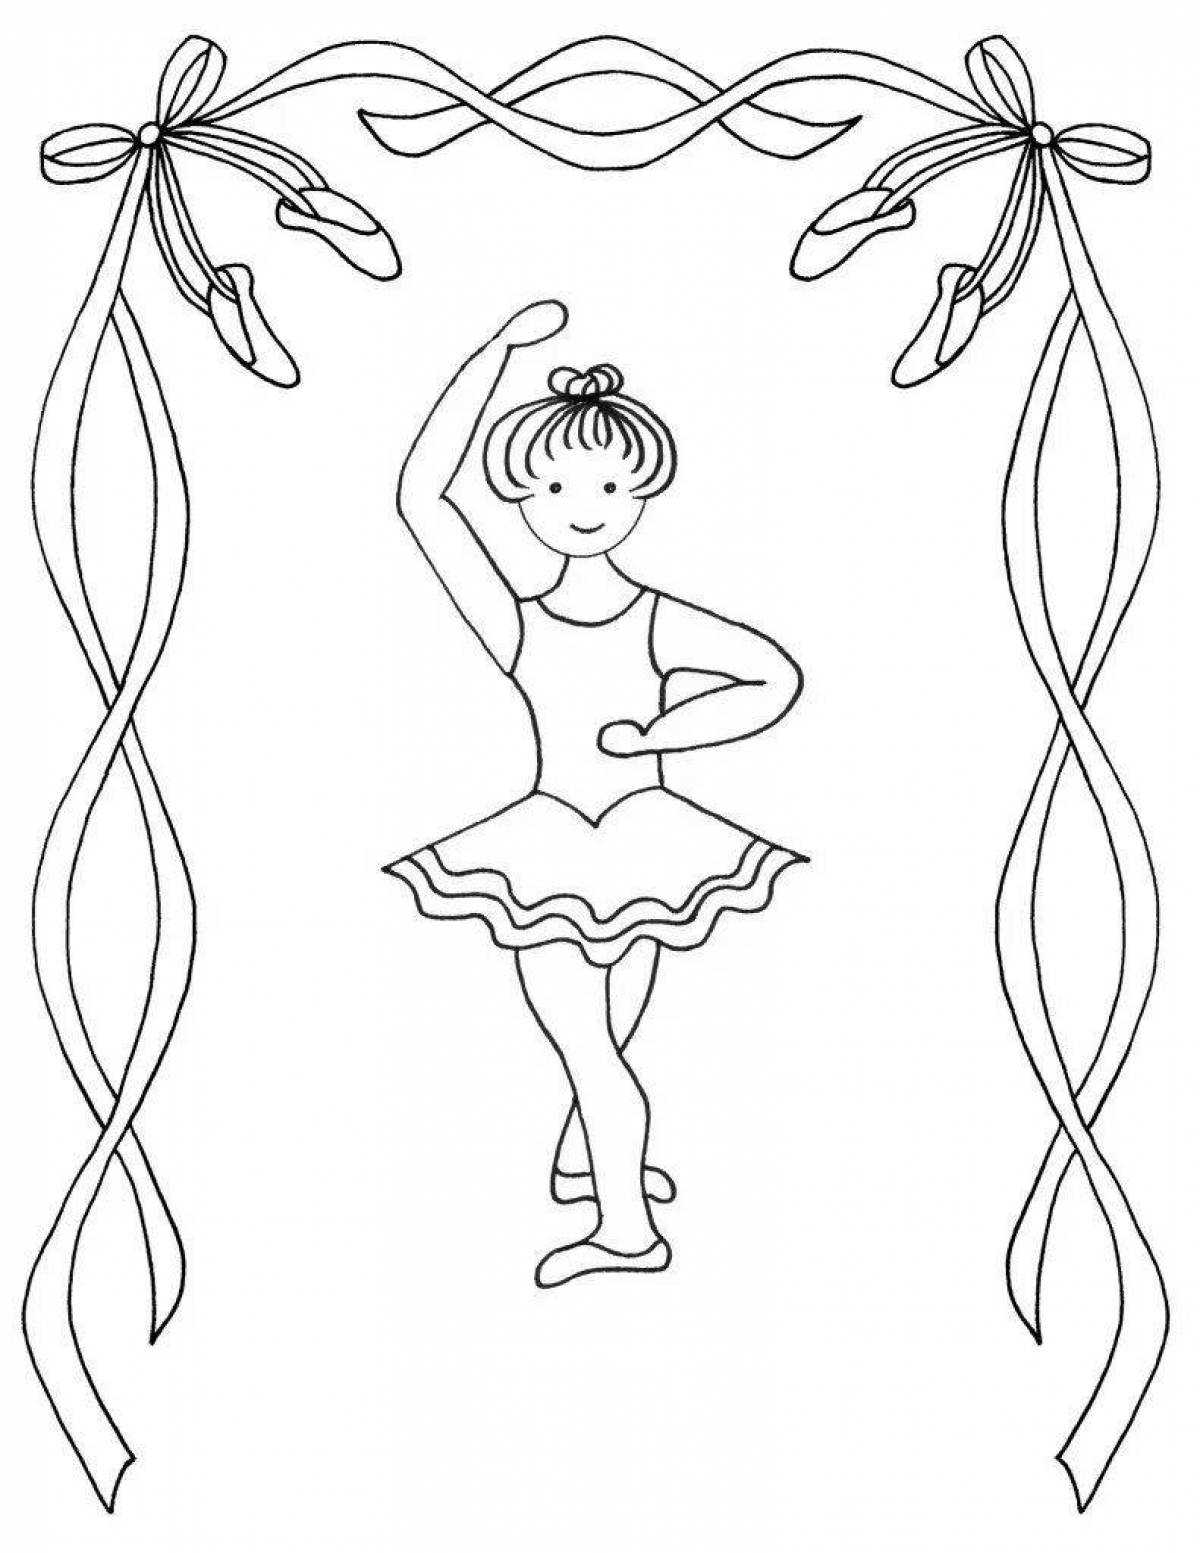 Танцевальные рисунки для детей для раскрашивания